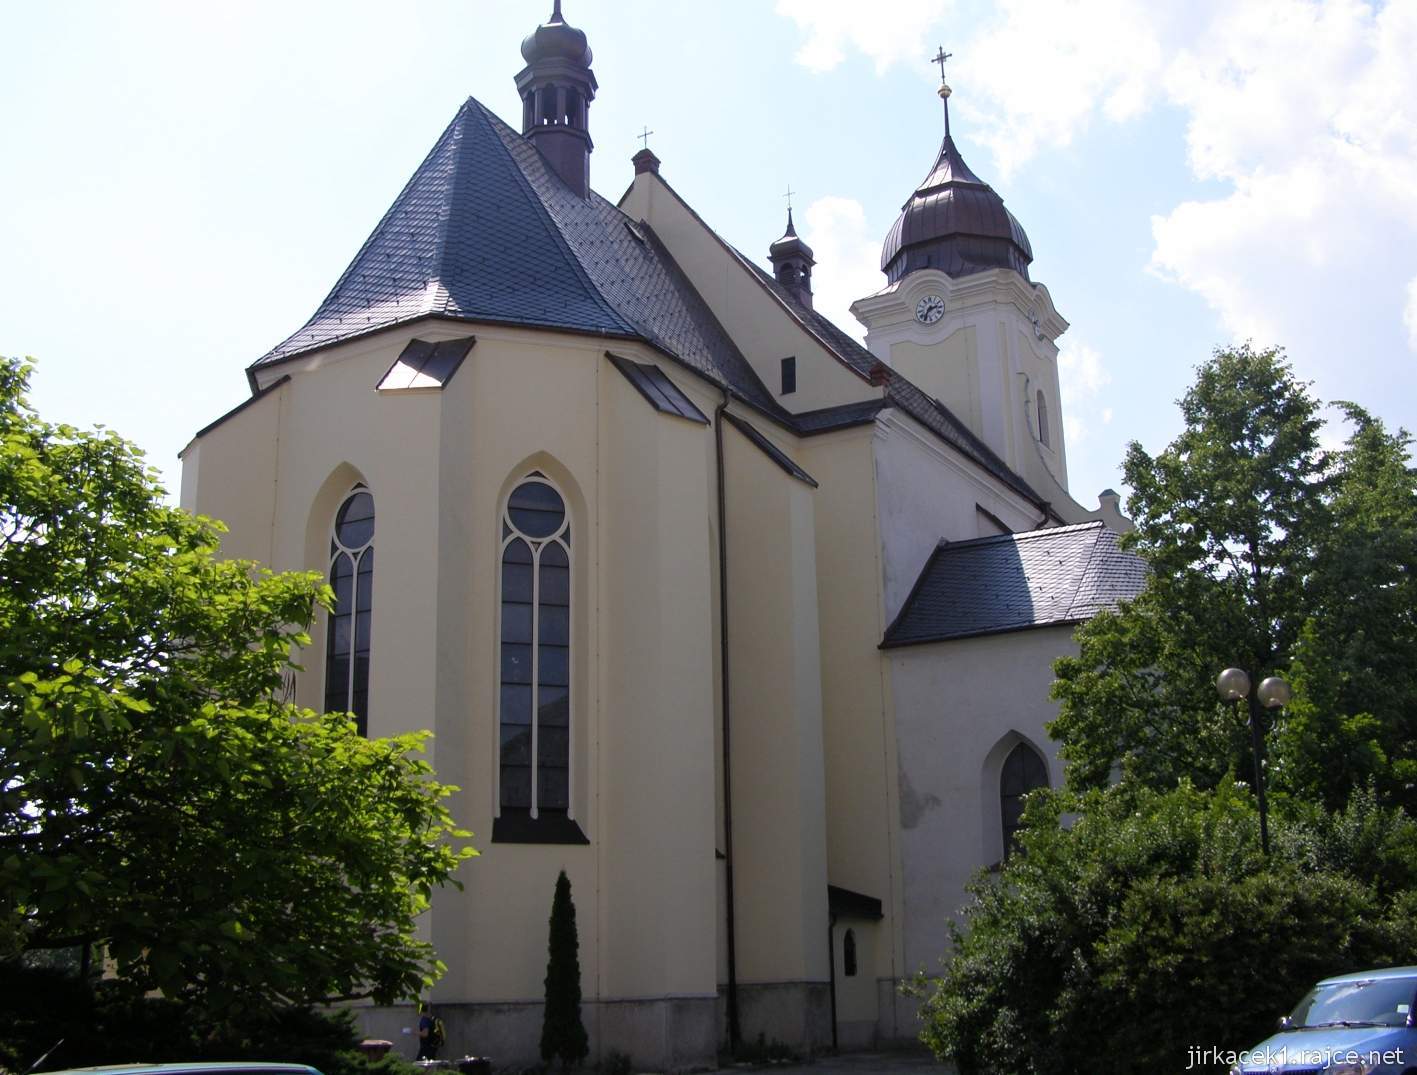 11 - Hlučín - kostel sv. Jana Křtitele 01 - zadní pohled